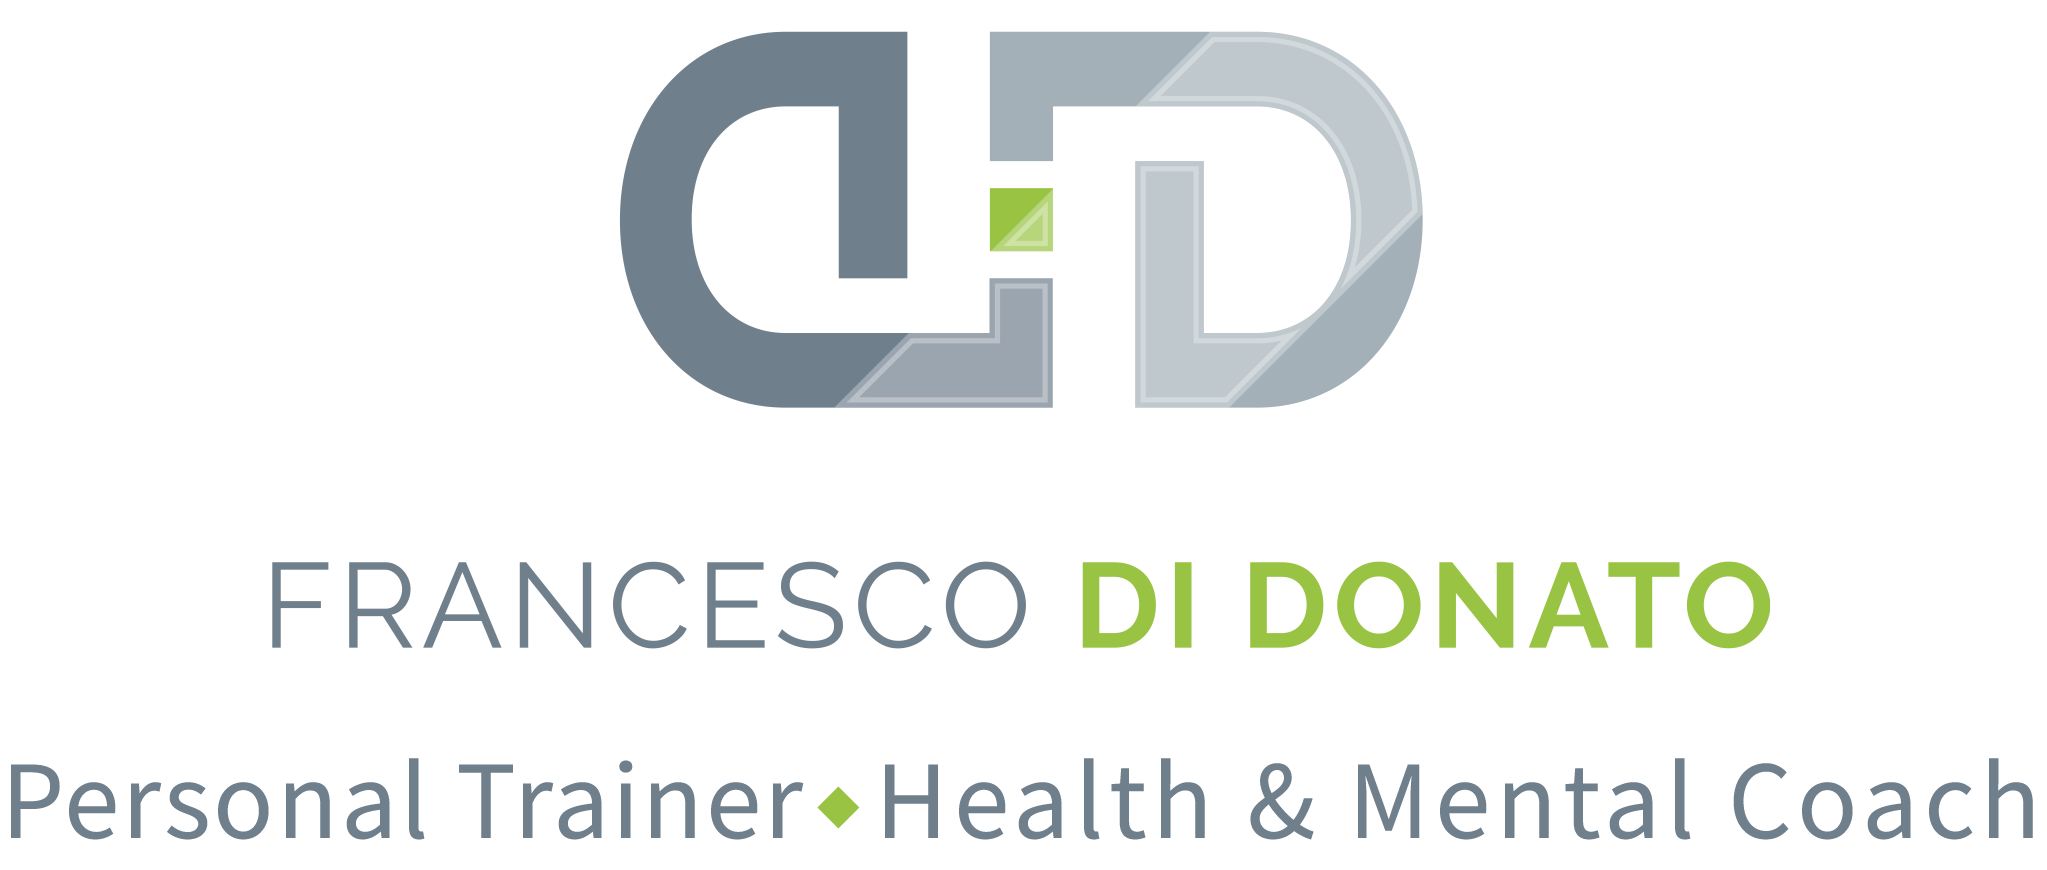 Francesco Di Donato | Personal Trainer - Health & Mental Coach